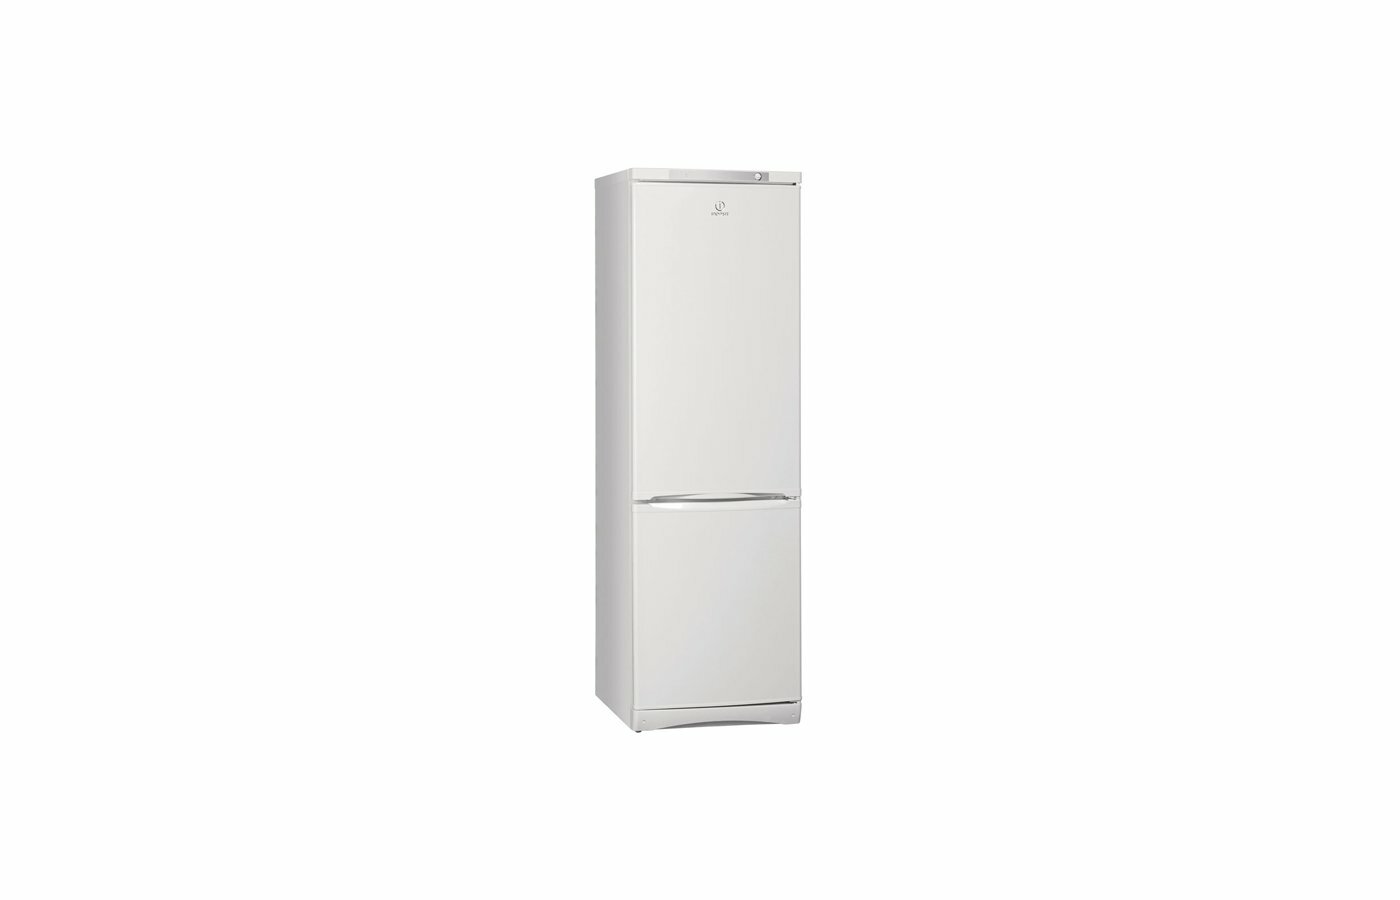 Отдельно стоящий холодильник Indesit с морозильной камерой ES 18